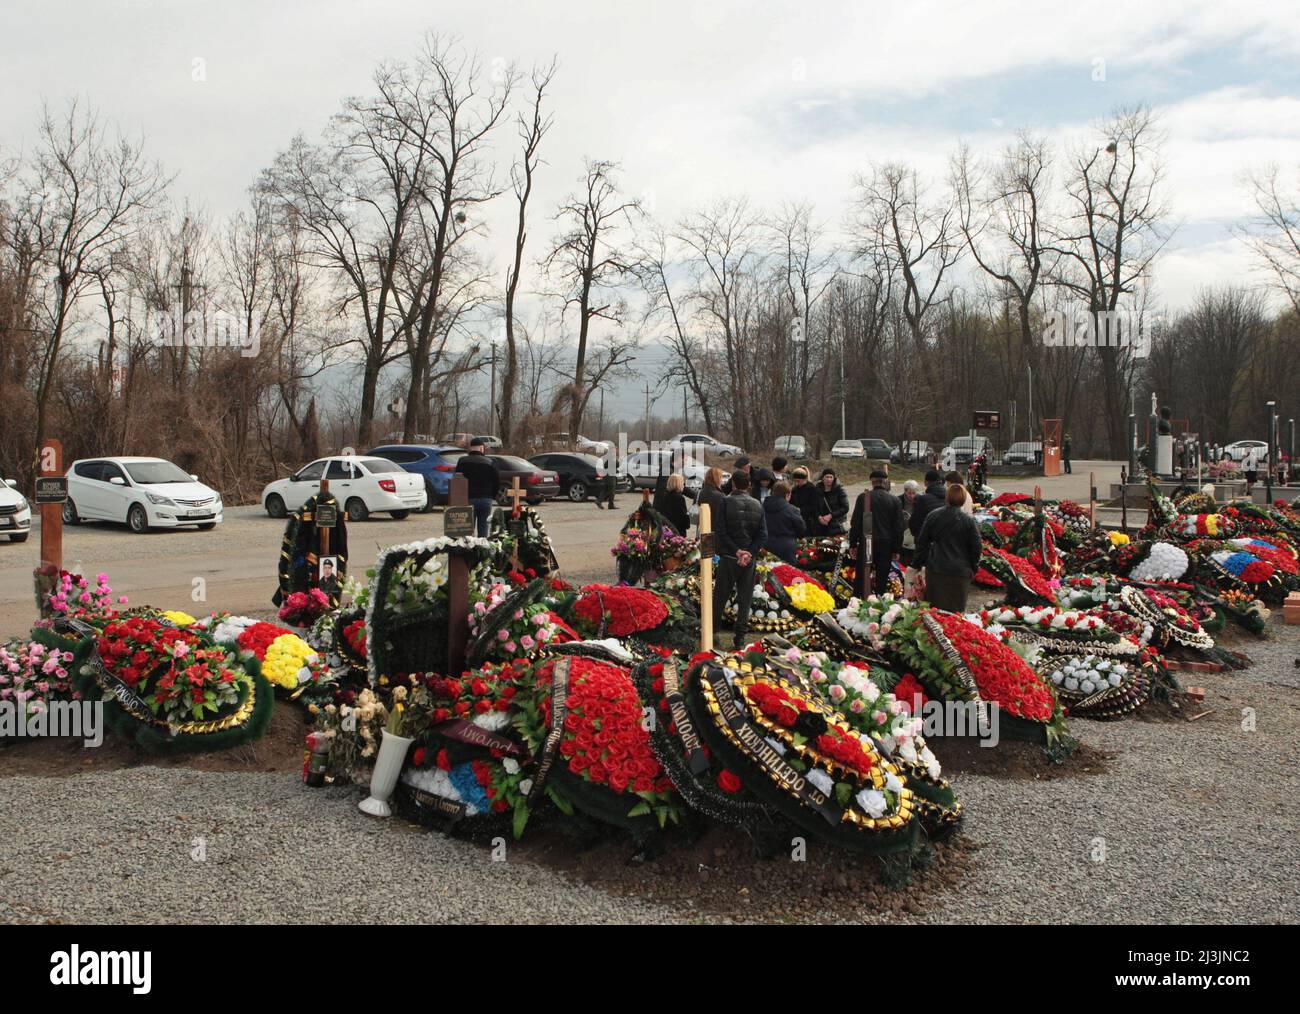 Des tombes de membres du service russe qui ont été tués pendant le conflit entre l'Ukraine et la Russie sont vues dans un cimetière à Vladikavkaz, Russie le 8 avril 2022. PHOTOGRAPHE REUTERS/REUTERS Banque D'Images